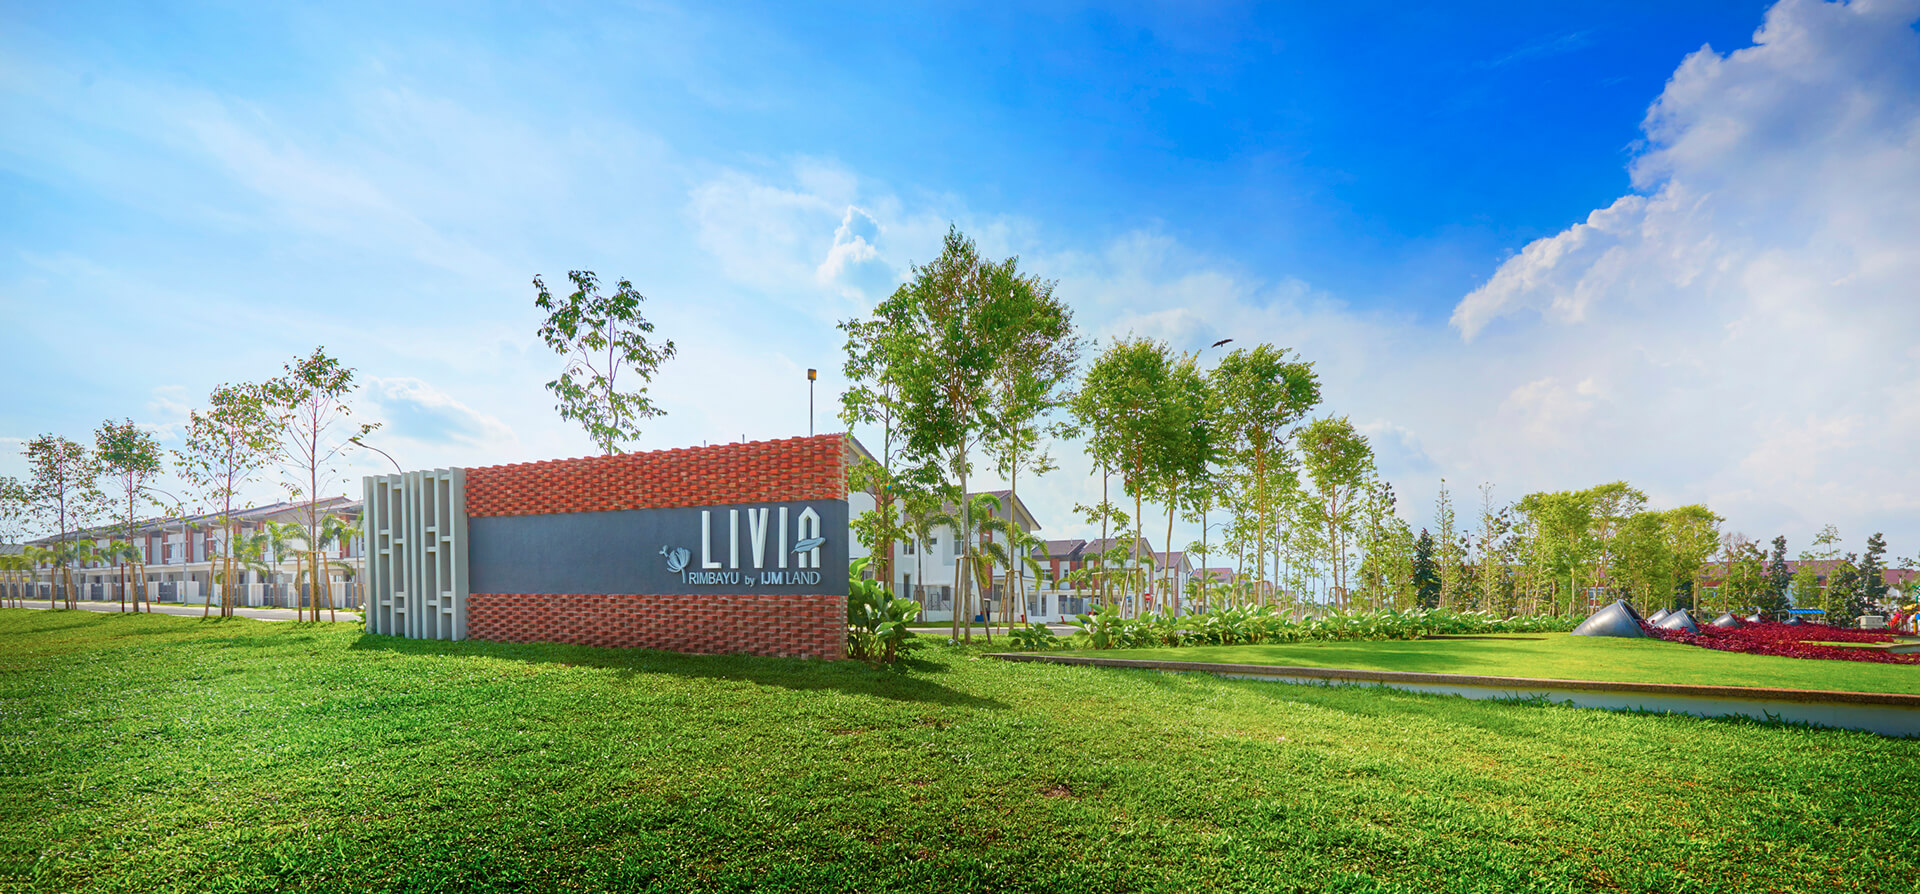 Livia - Entrance